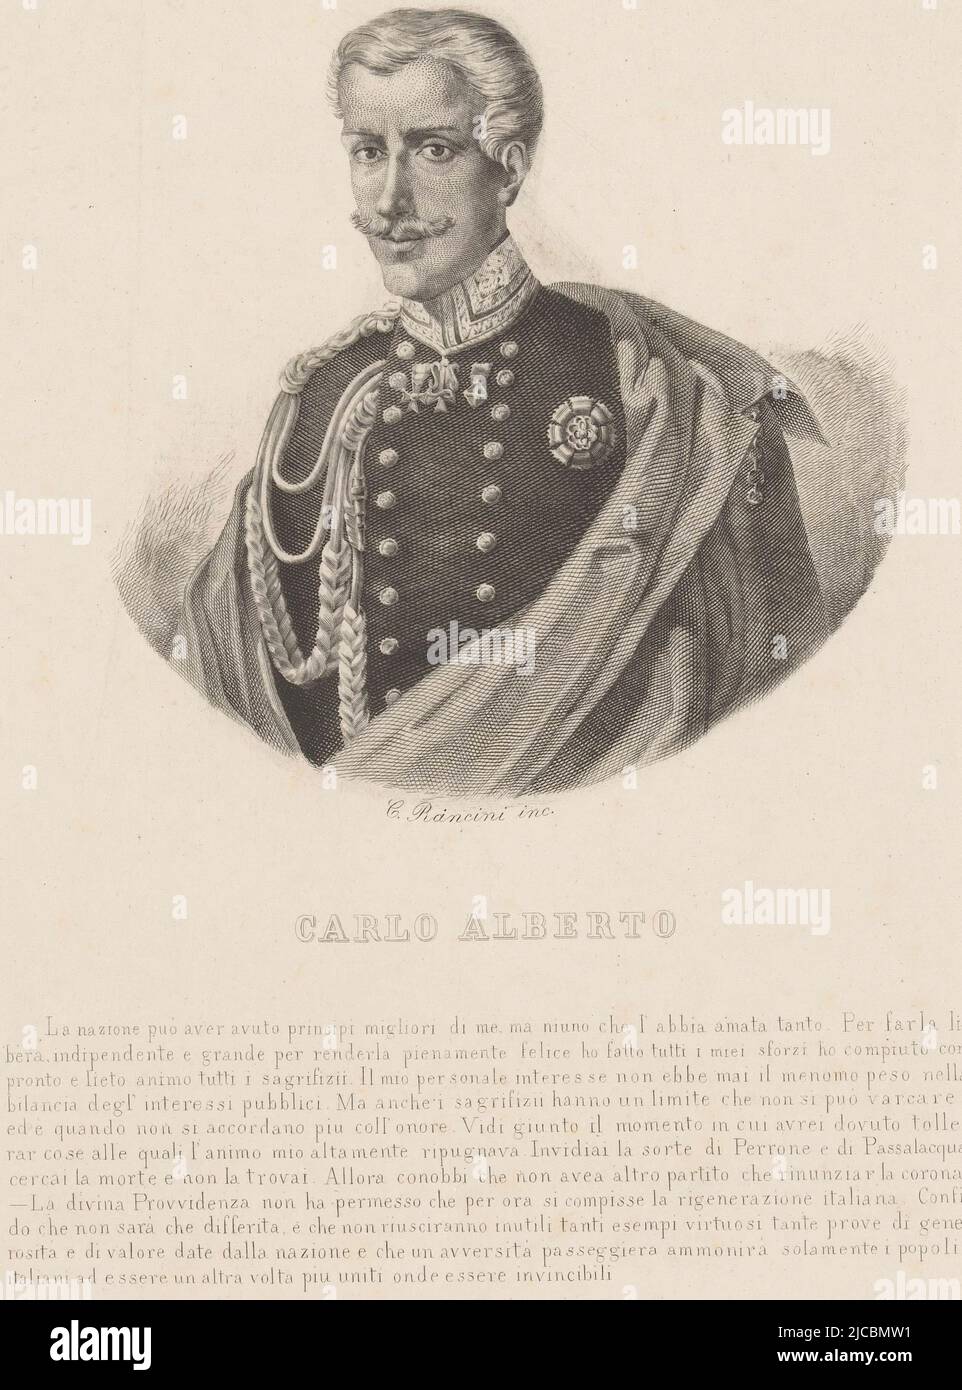 Porträt von Charles Albert, König von Sardinien, Druckerei: C. Rancini, (auf Objekt erwähnt), Italien, c. 1849, Papier, Gravur, H 261 mm - B 170 mm Stockfoto